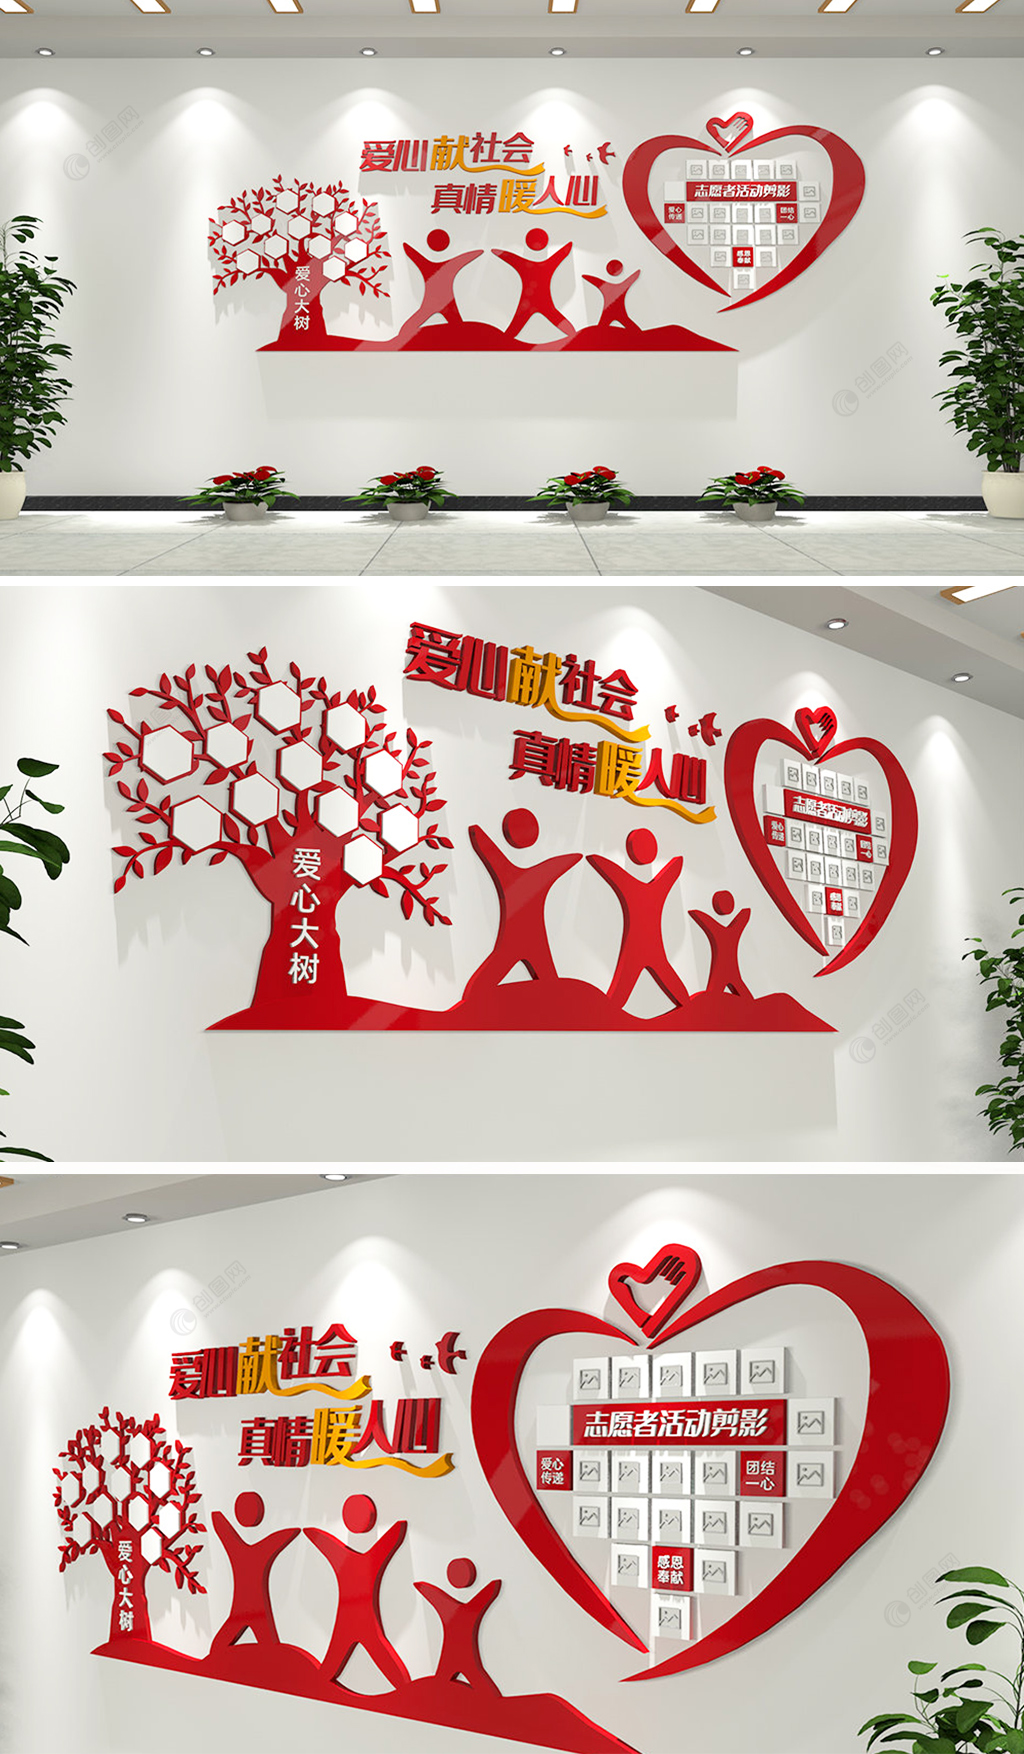 红色爱心志愿者风采文化墙设计